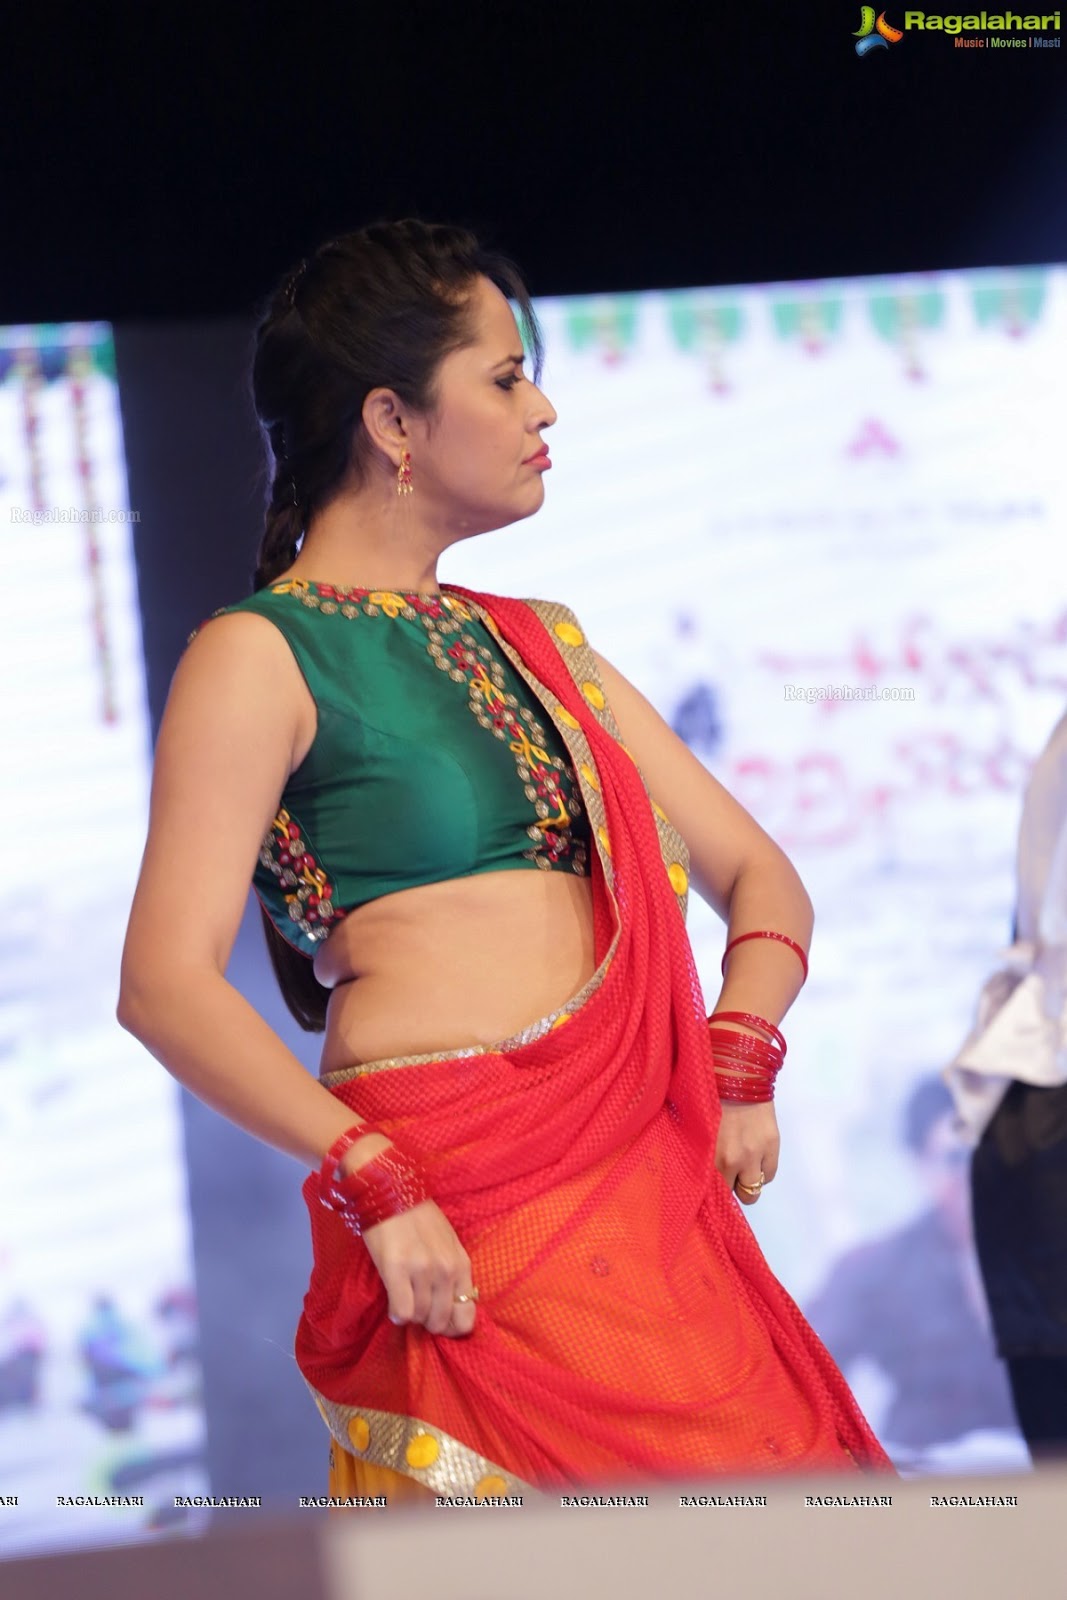 Indian Hot Actress Anasuya Bharadwaj Hot And Sexy In Saree